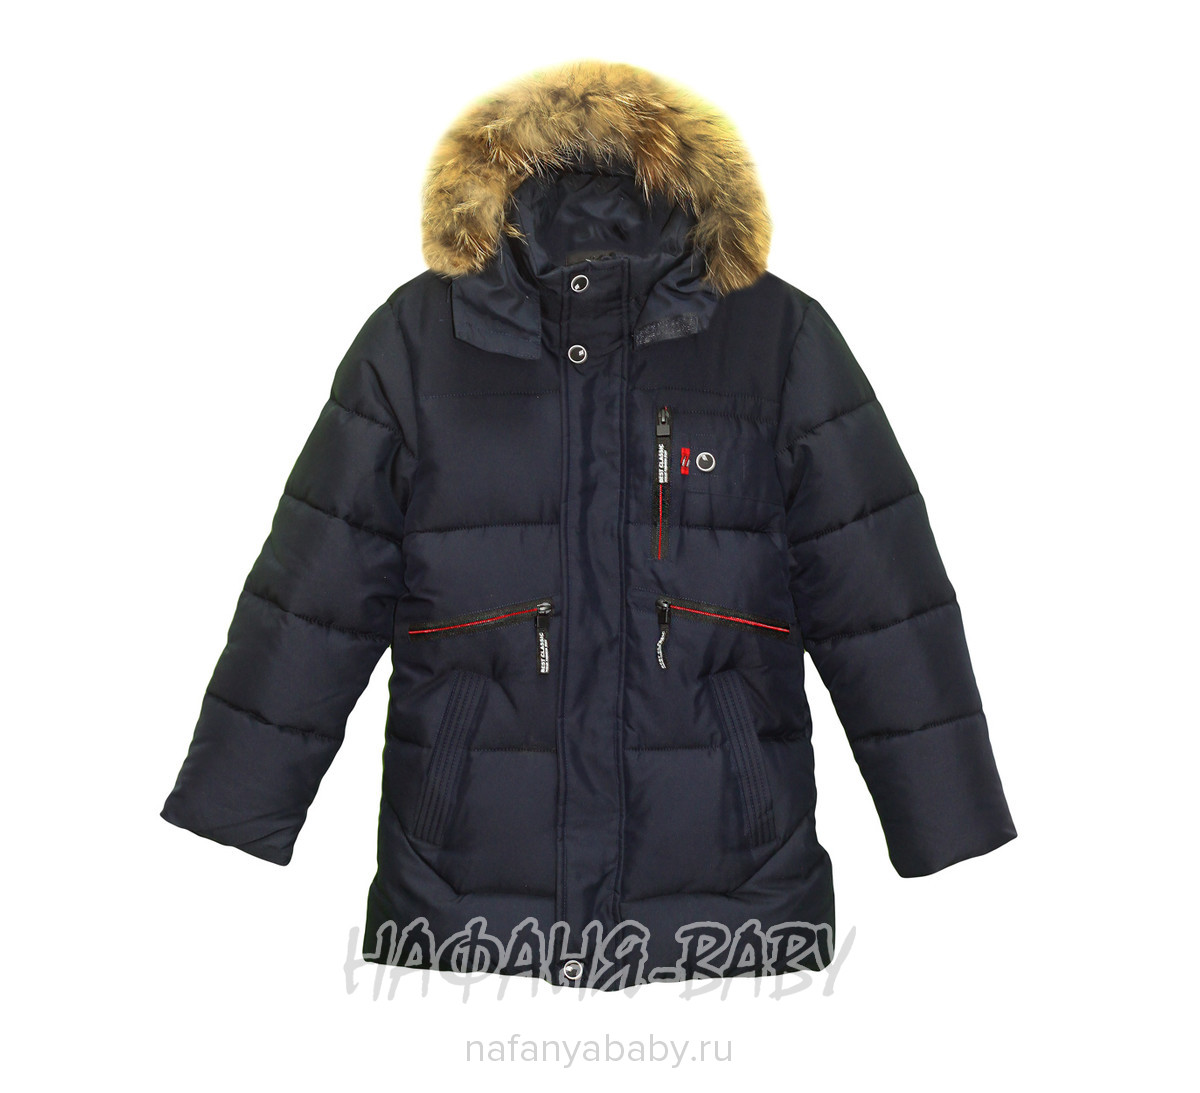 Зимняя удлиненная куртка TOFEINA арт: 1717, 10-15 лет, 5-9 лет, оптом Китай (Пекин)